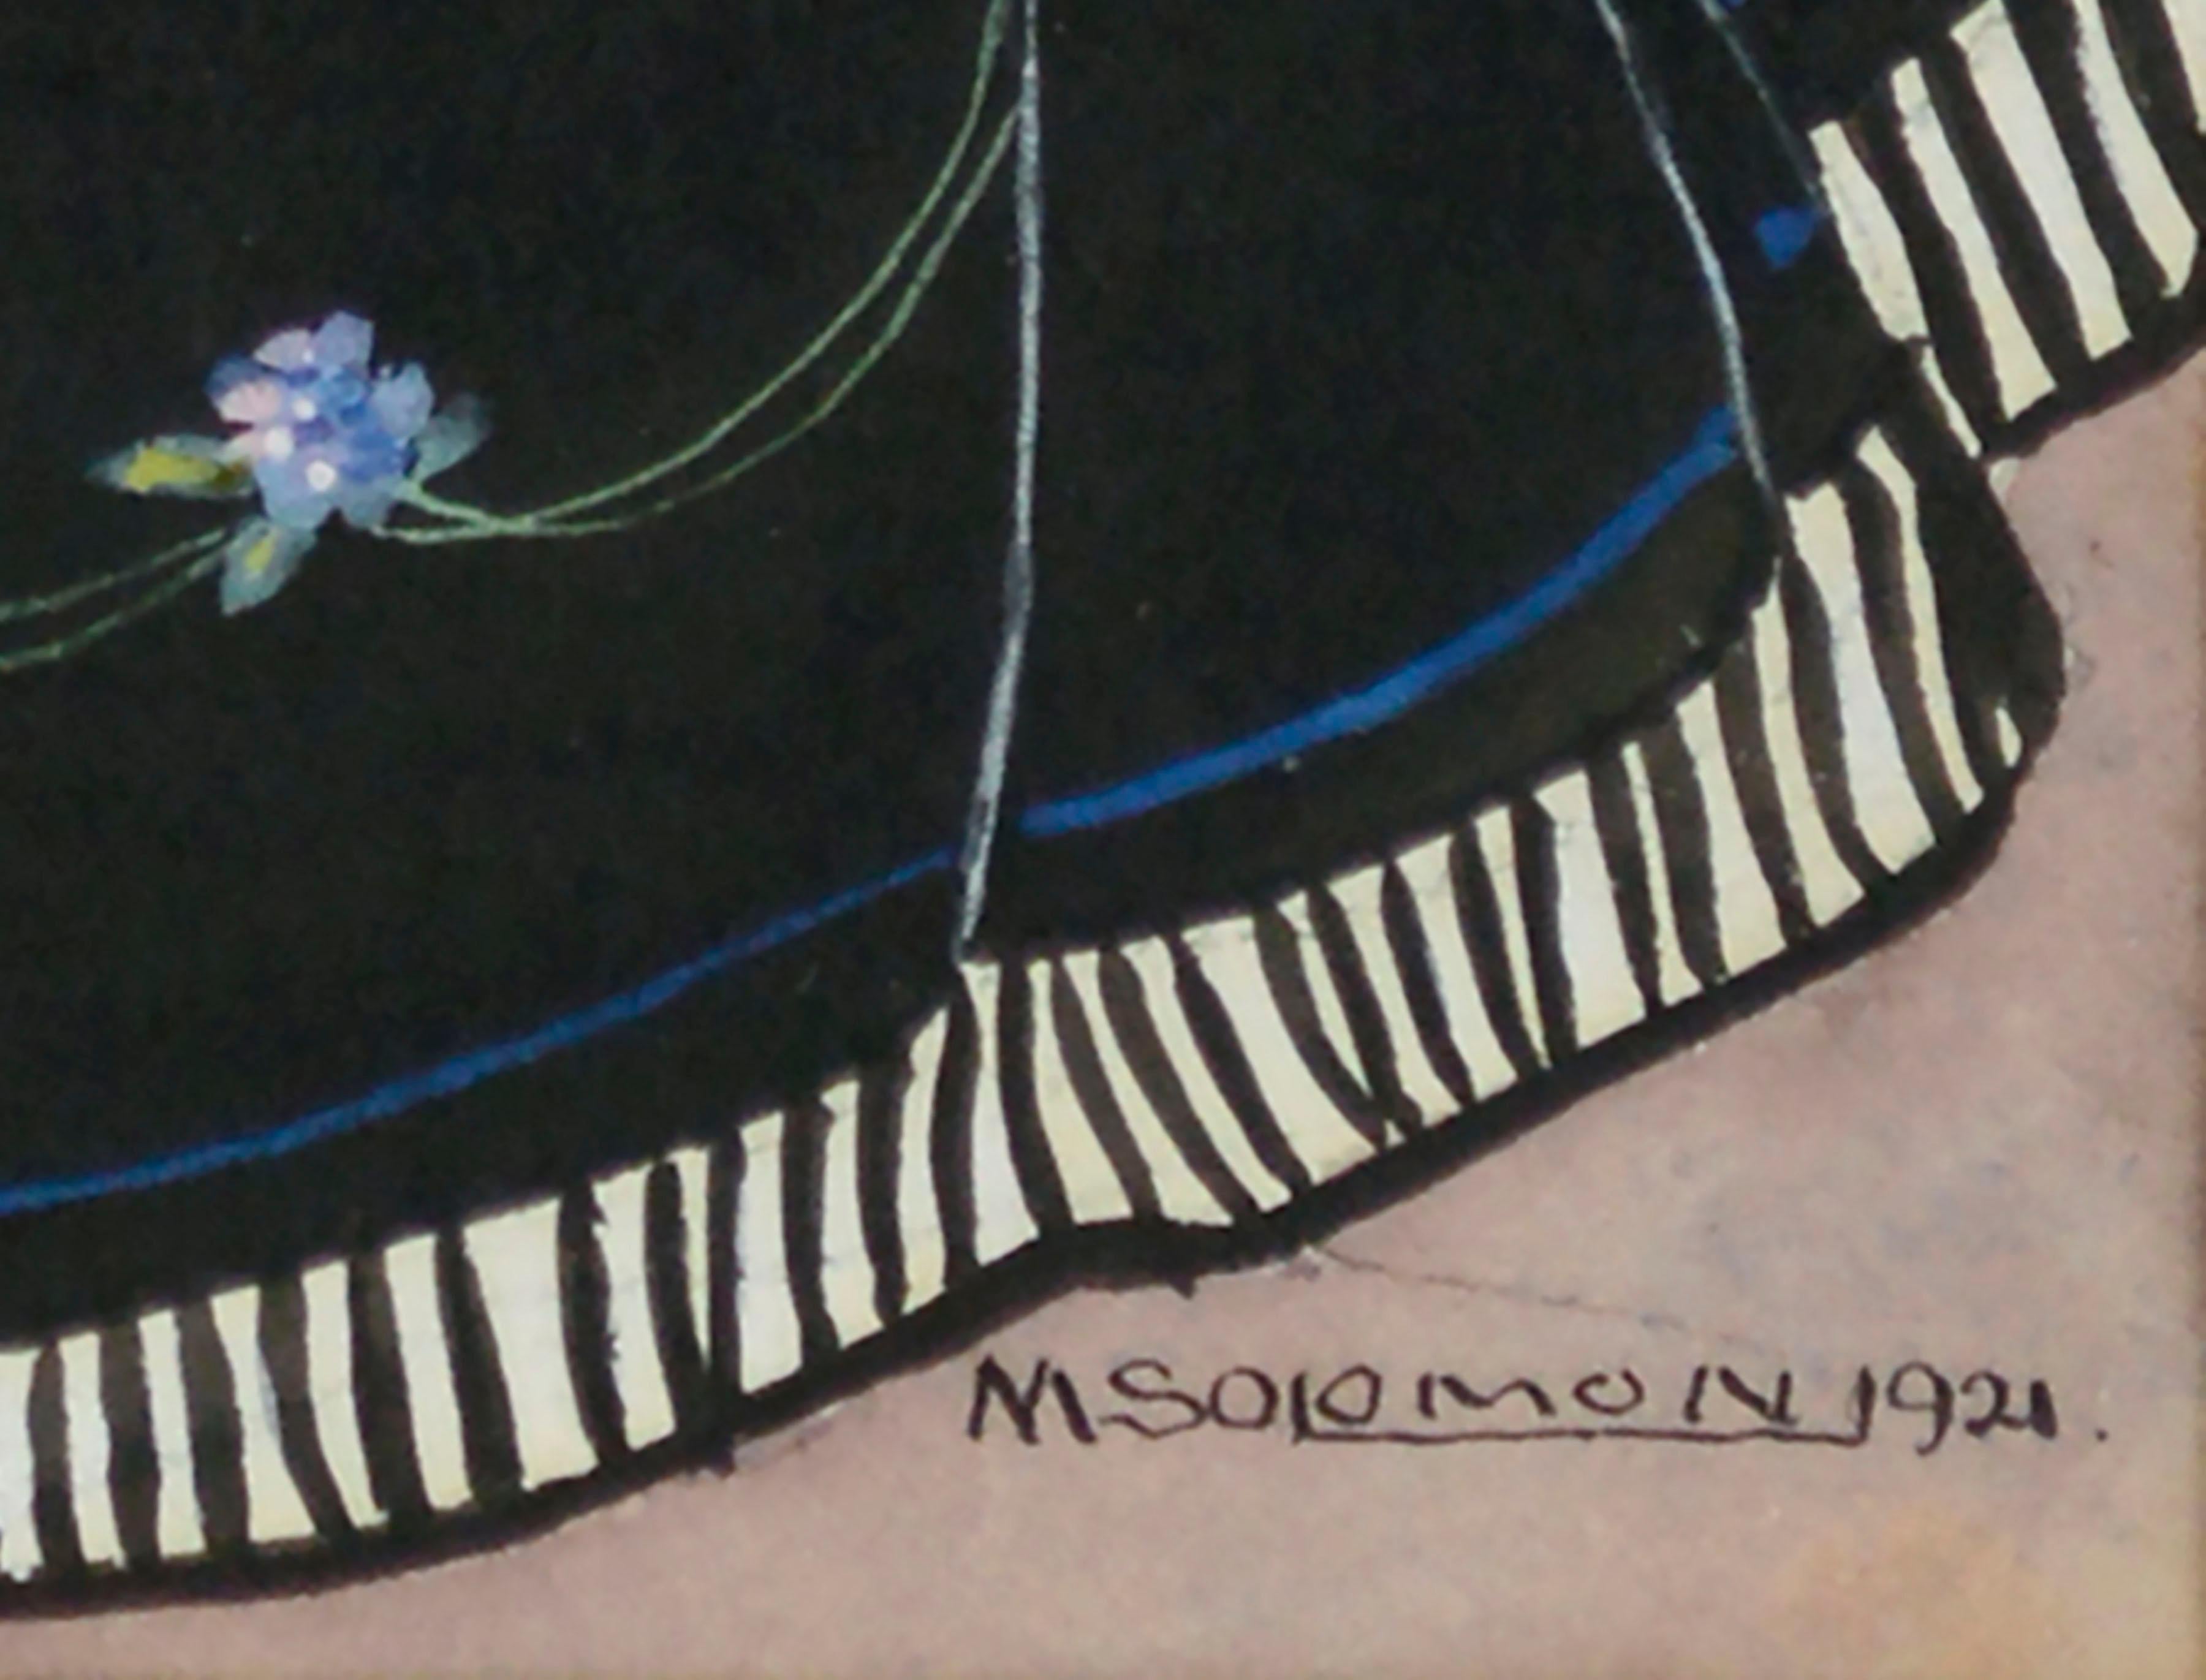 Illustration de mode figurative historique finement détaillée, peinte à l'aquarelle en 1921, d'une dame en robe du XVIIe siècle, avec une jupe noire à cerceaux décorée de petites fleurs bleues, un petit corsage à encolure basse incurvée et un col